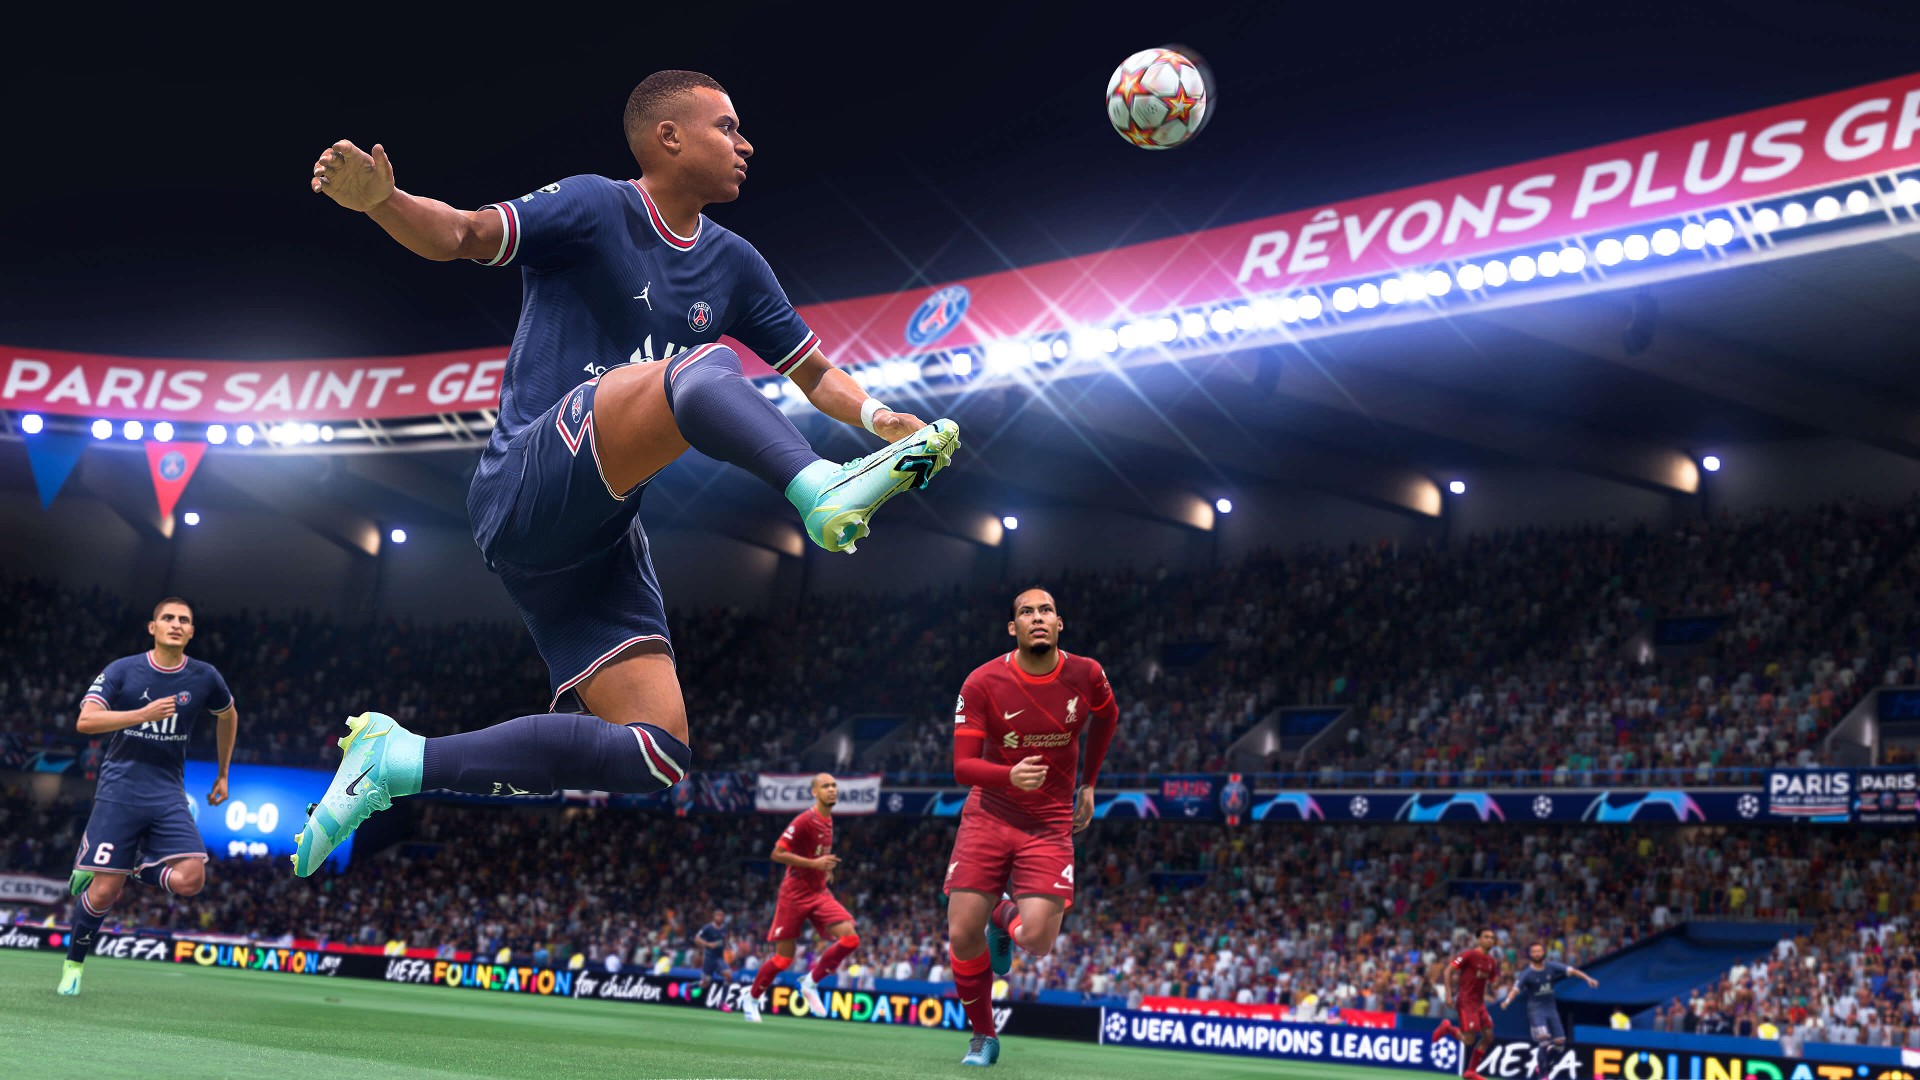 FIFA 13 [Origin/EA app] with a warranty ✅ | offline